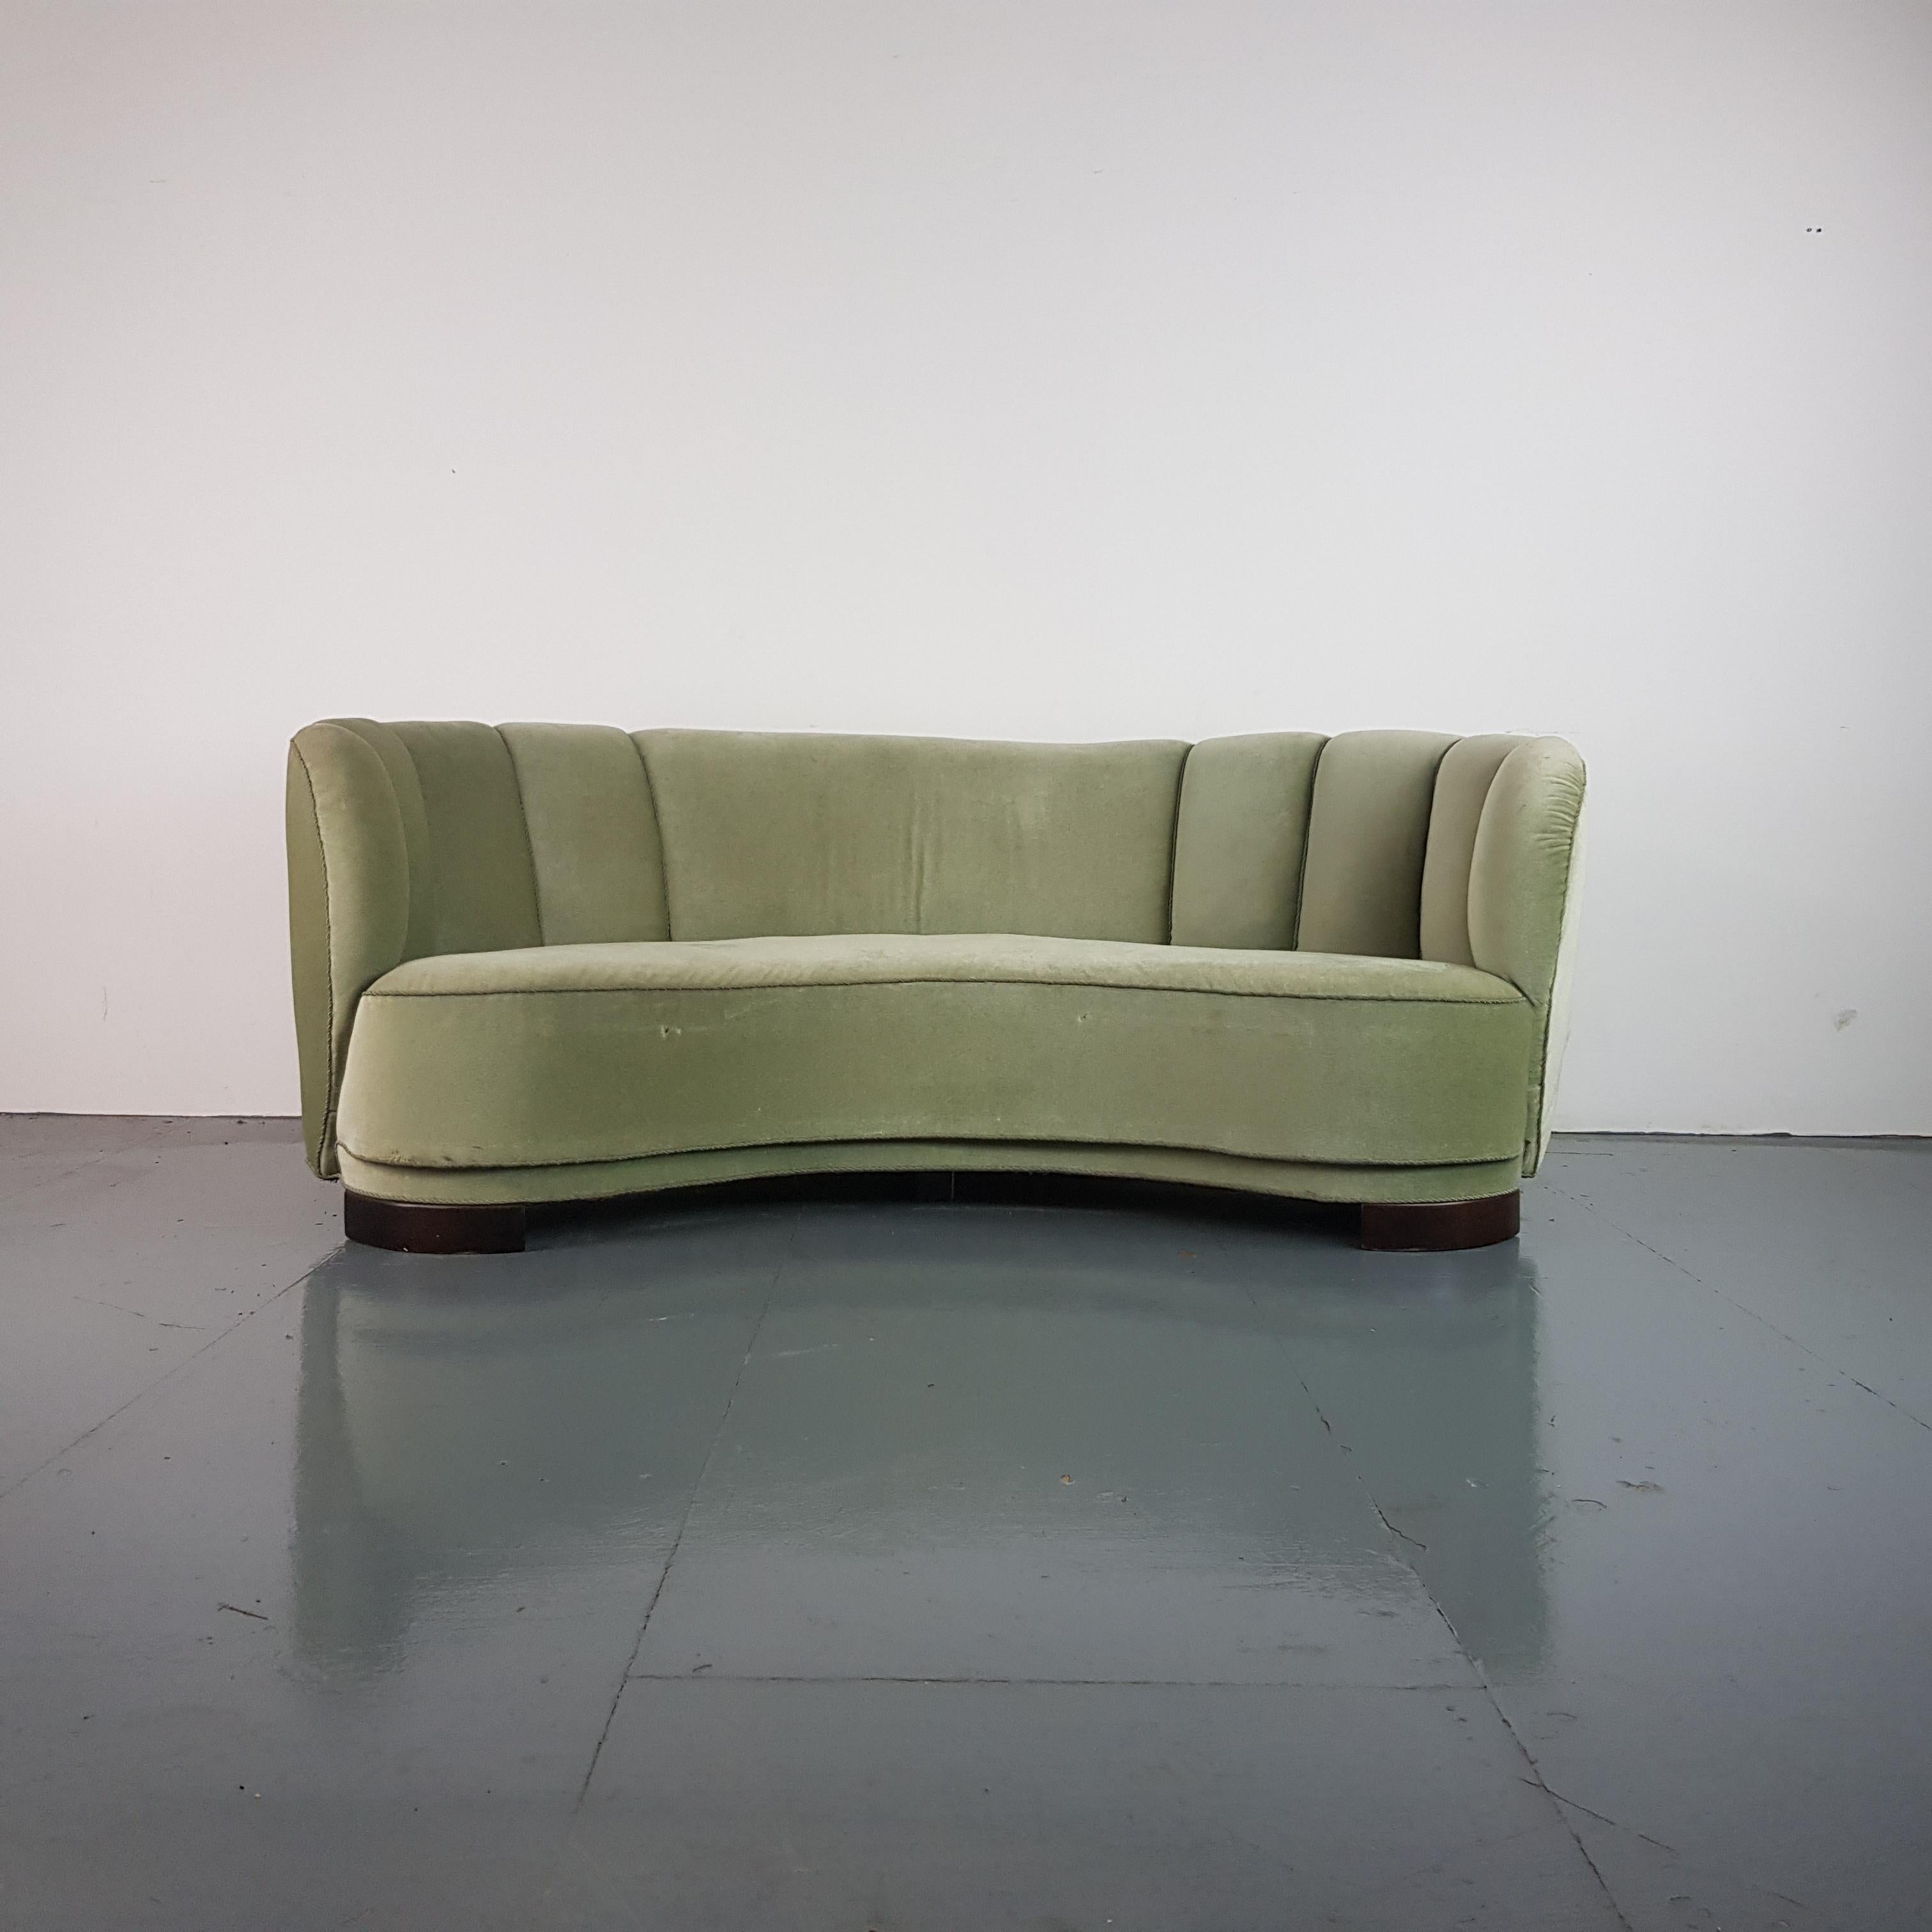 Vintage 1930s-1940s Danish Banana Sofa with Original Green Velvet Upholstery For Sale 2